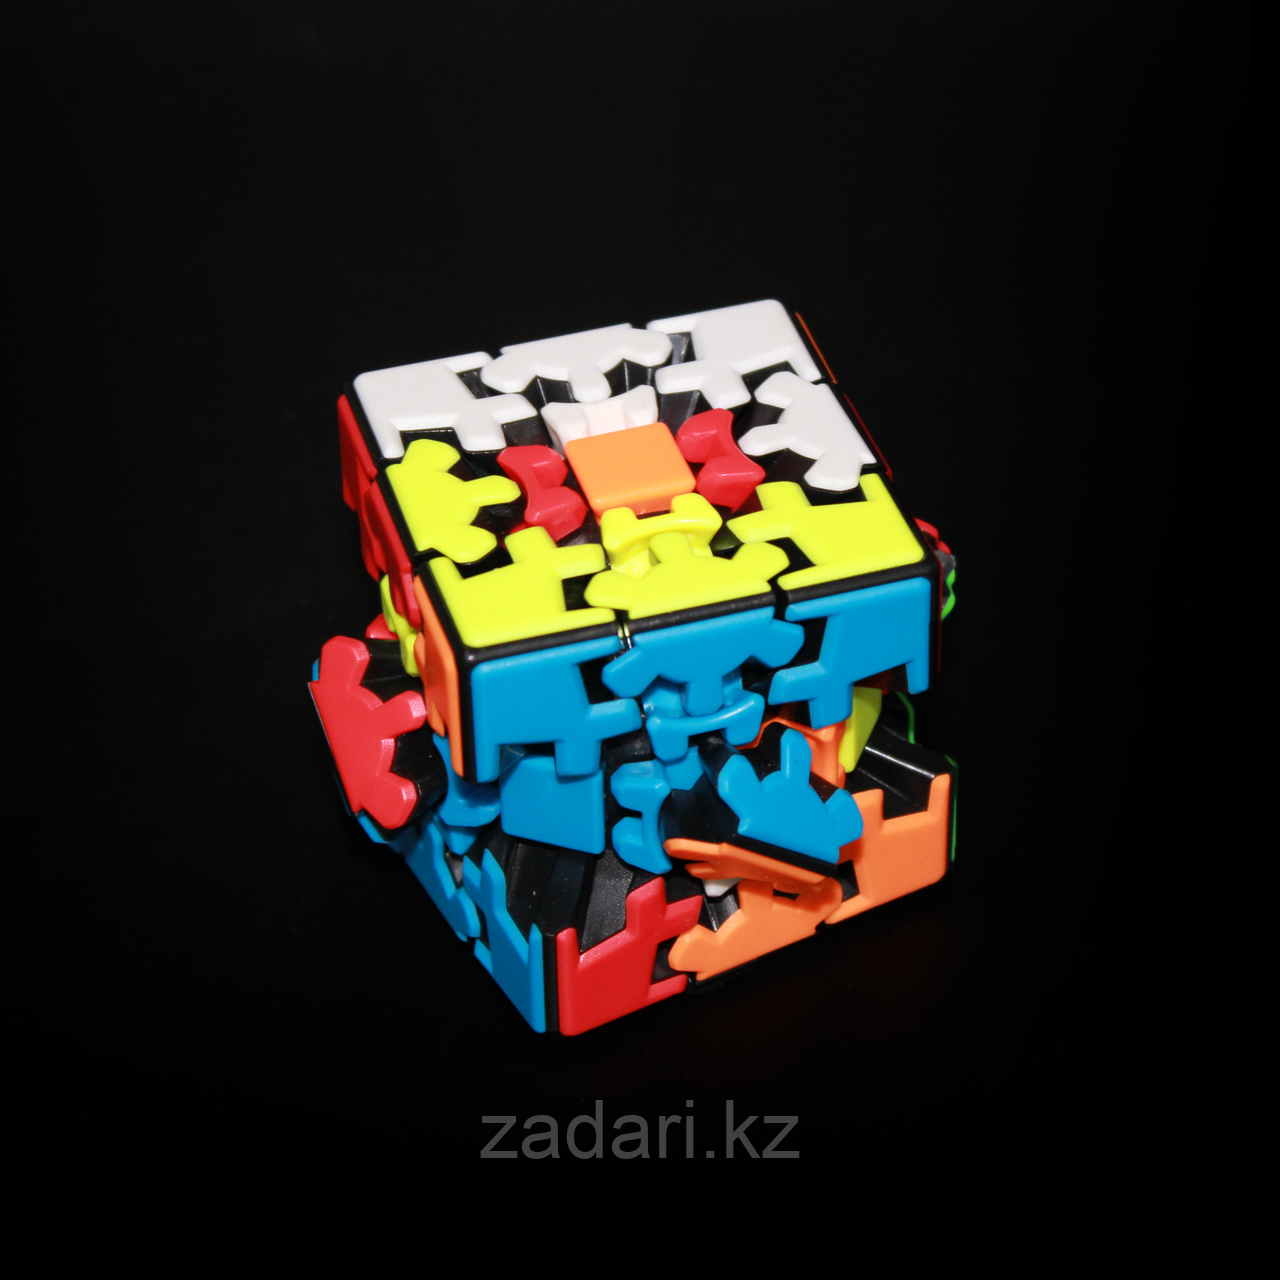 Кубик Рубика "Мозаика", фото 1